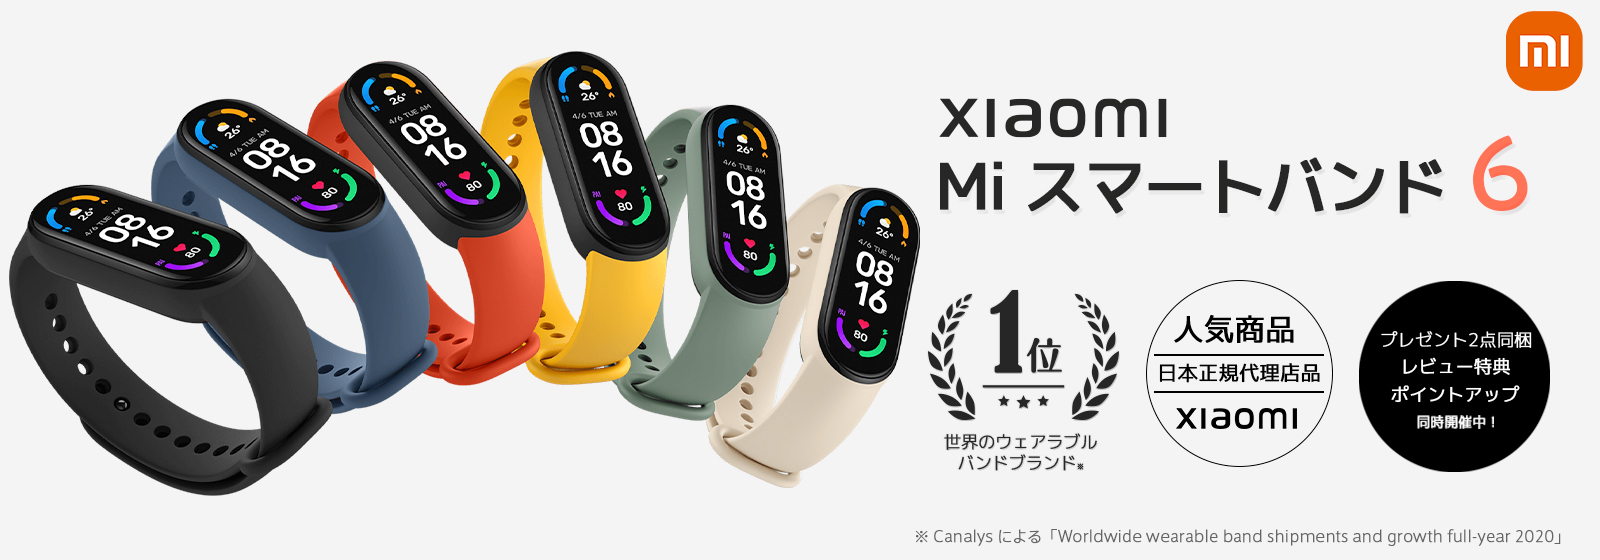 Xiaomi Mi スマートバンド 6 正規日本語版 